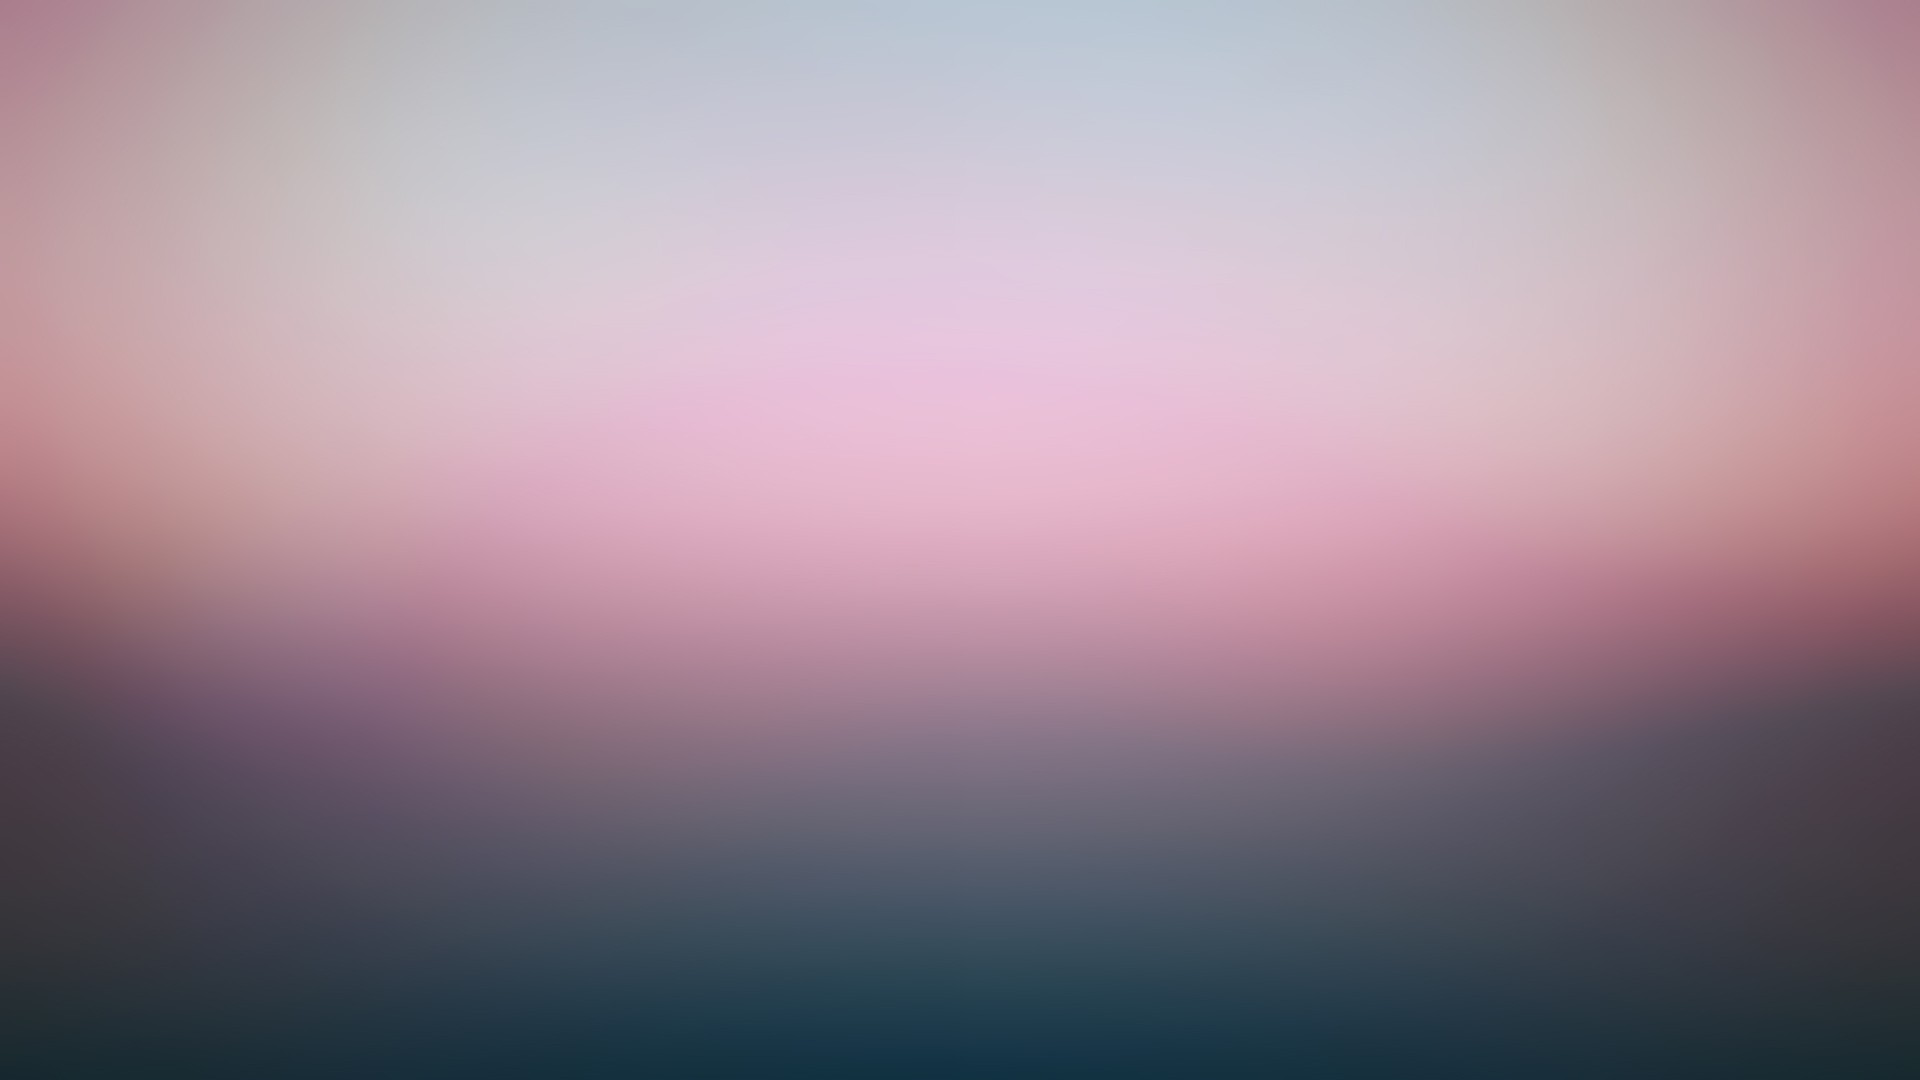 General 1920x1080 gradient blurred digital art texture minimalism